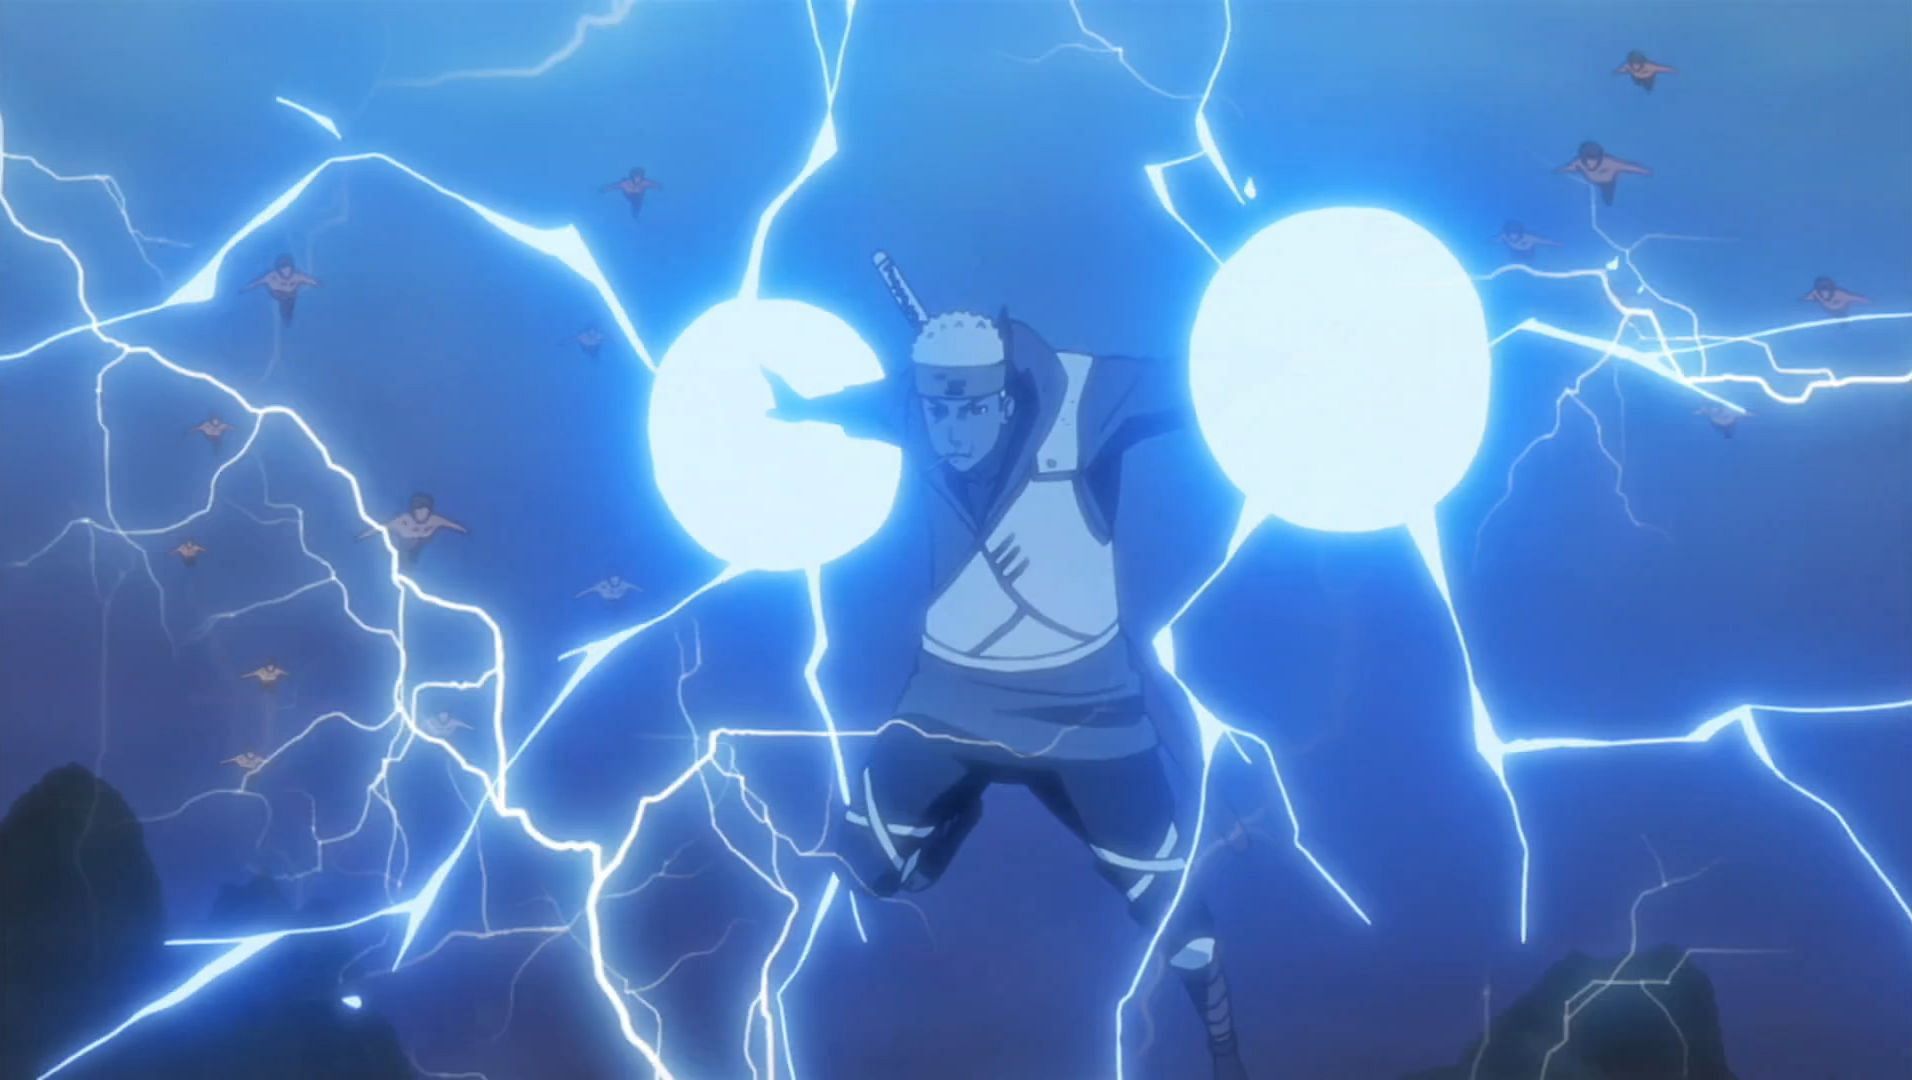 Lightning Release (image via Masashi Kishimoto/Shueisha, Viz, Naruto)